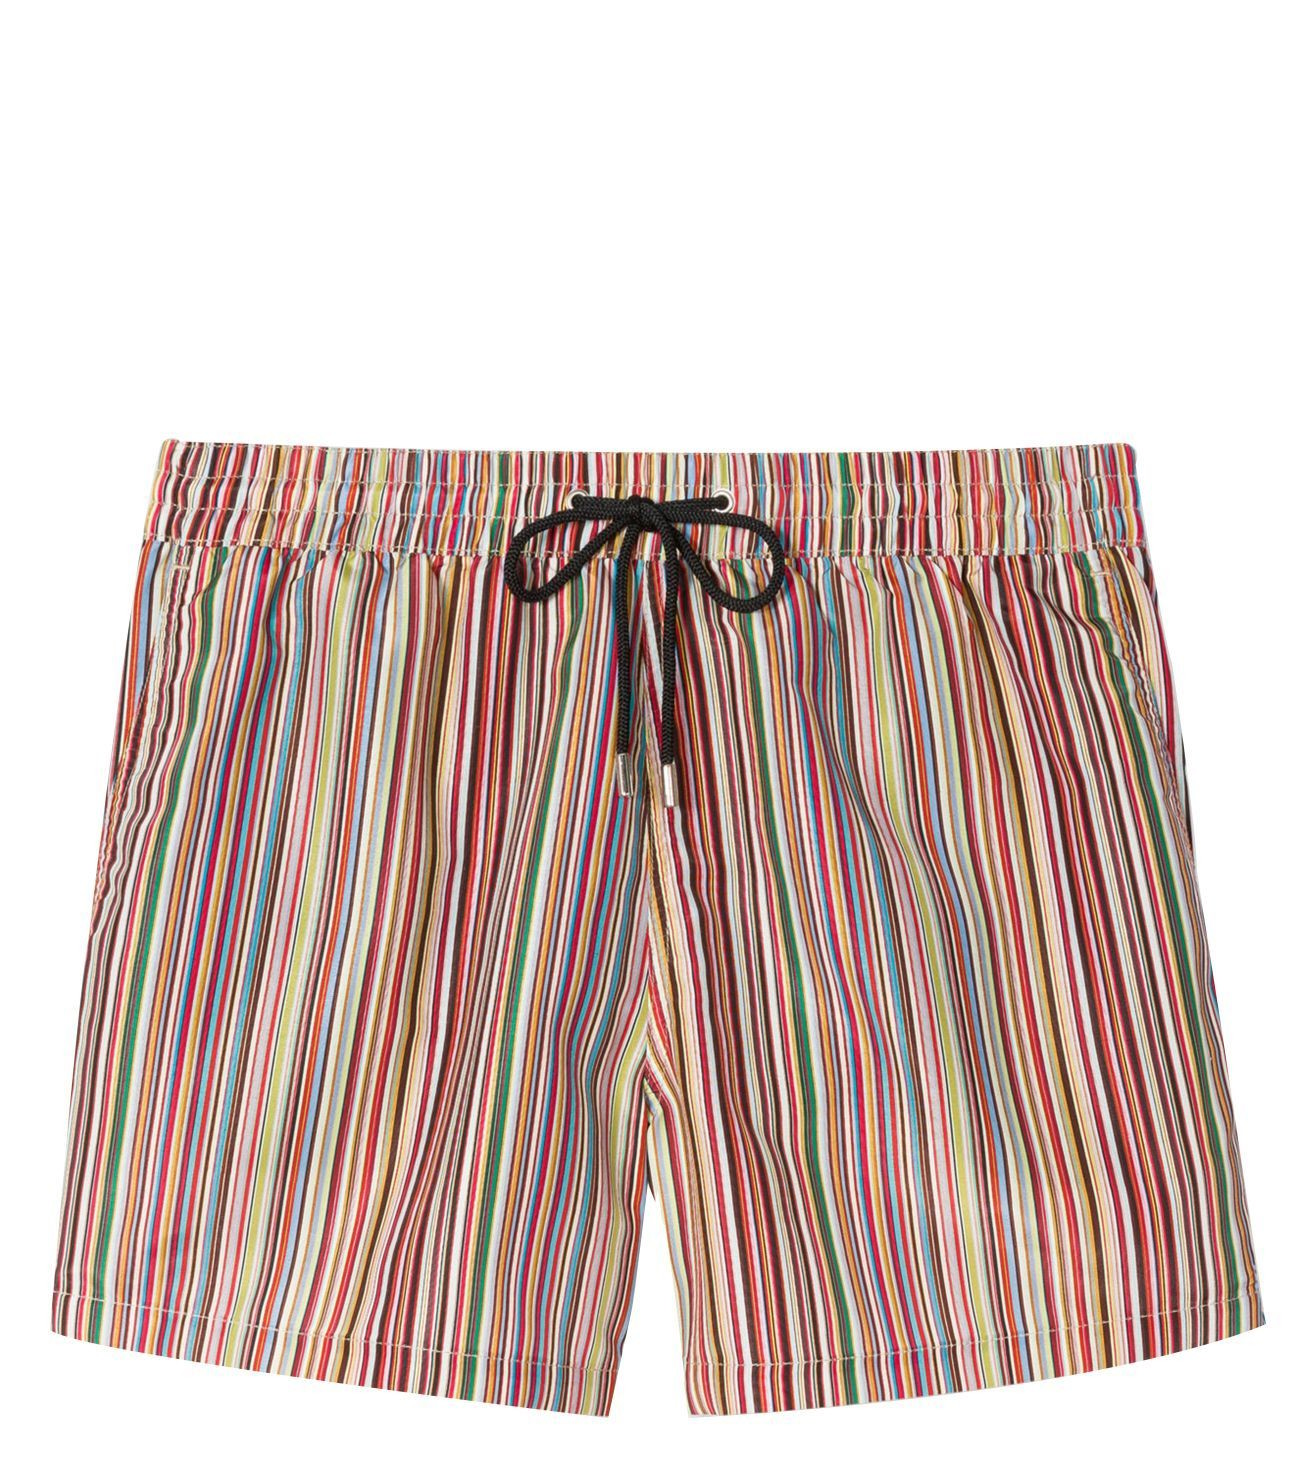 Mens Multi Coloured Striped Swim Shorts